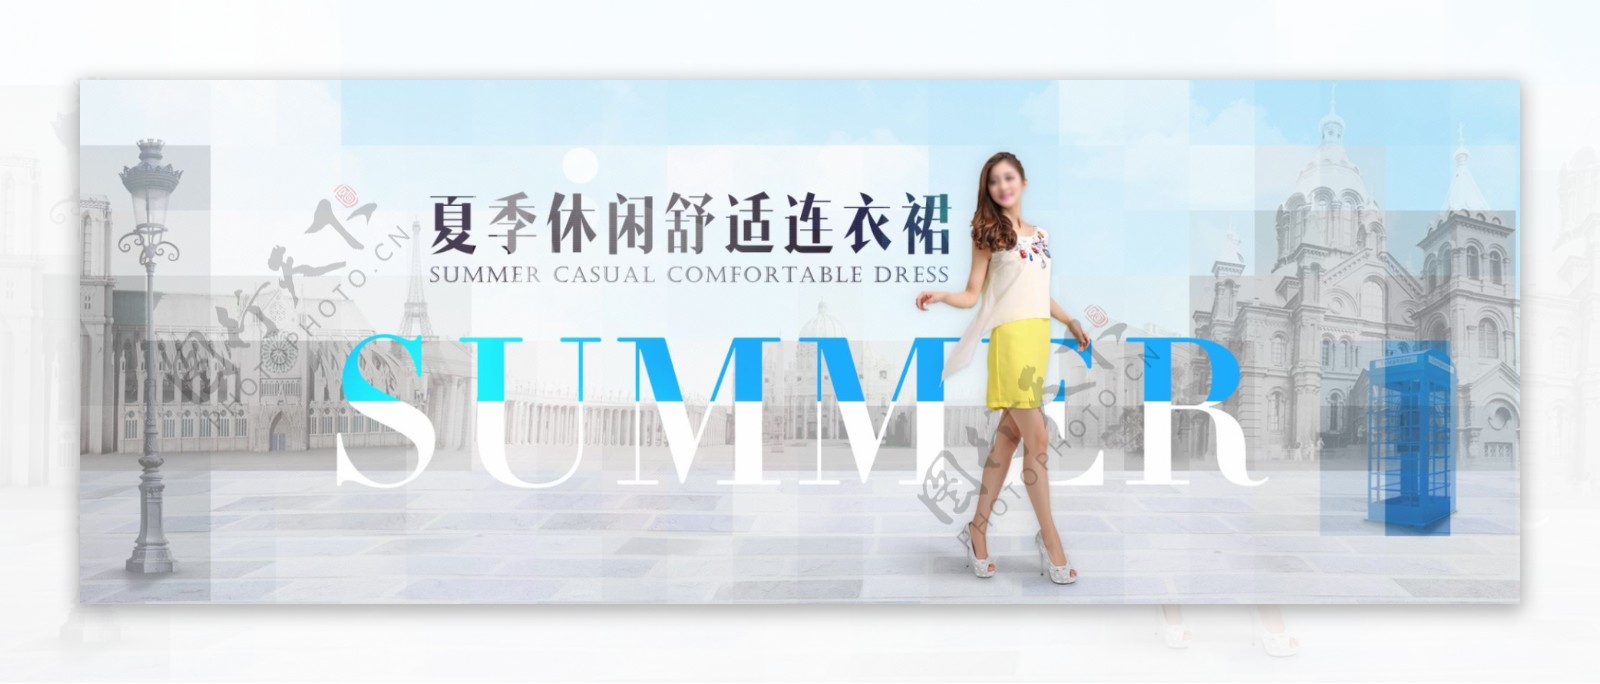 夏季女装连衣裙海报设计PSD素材